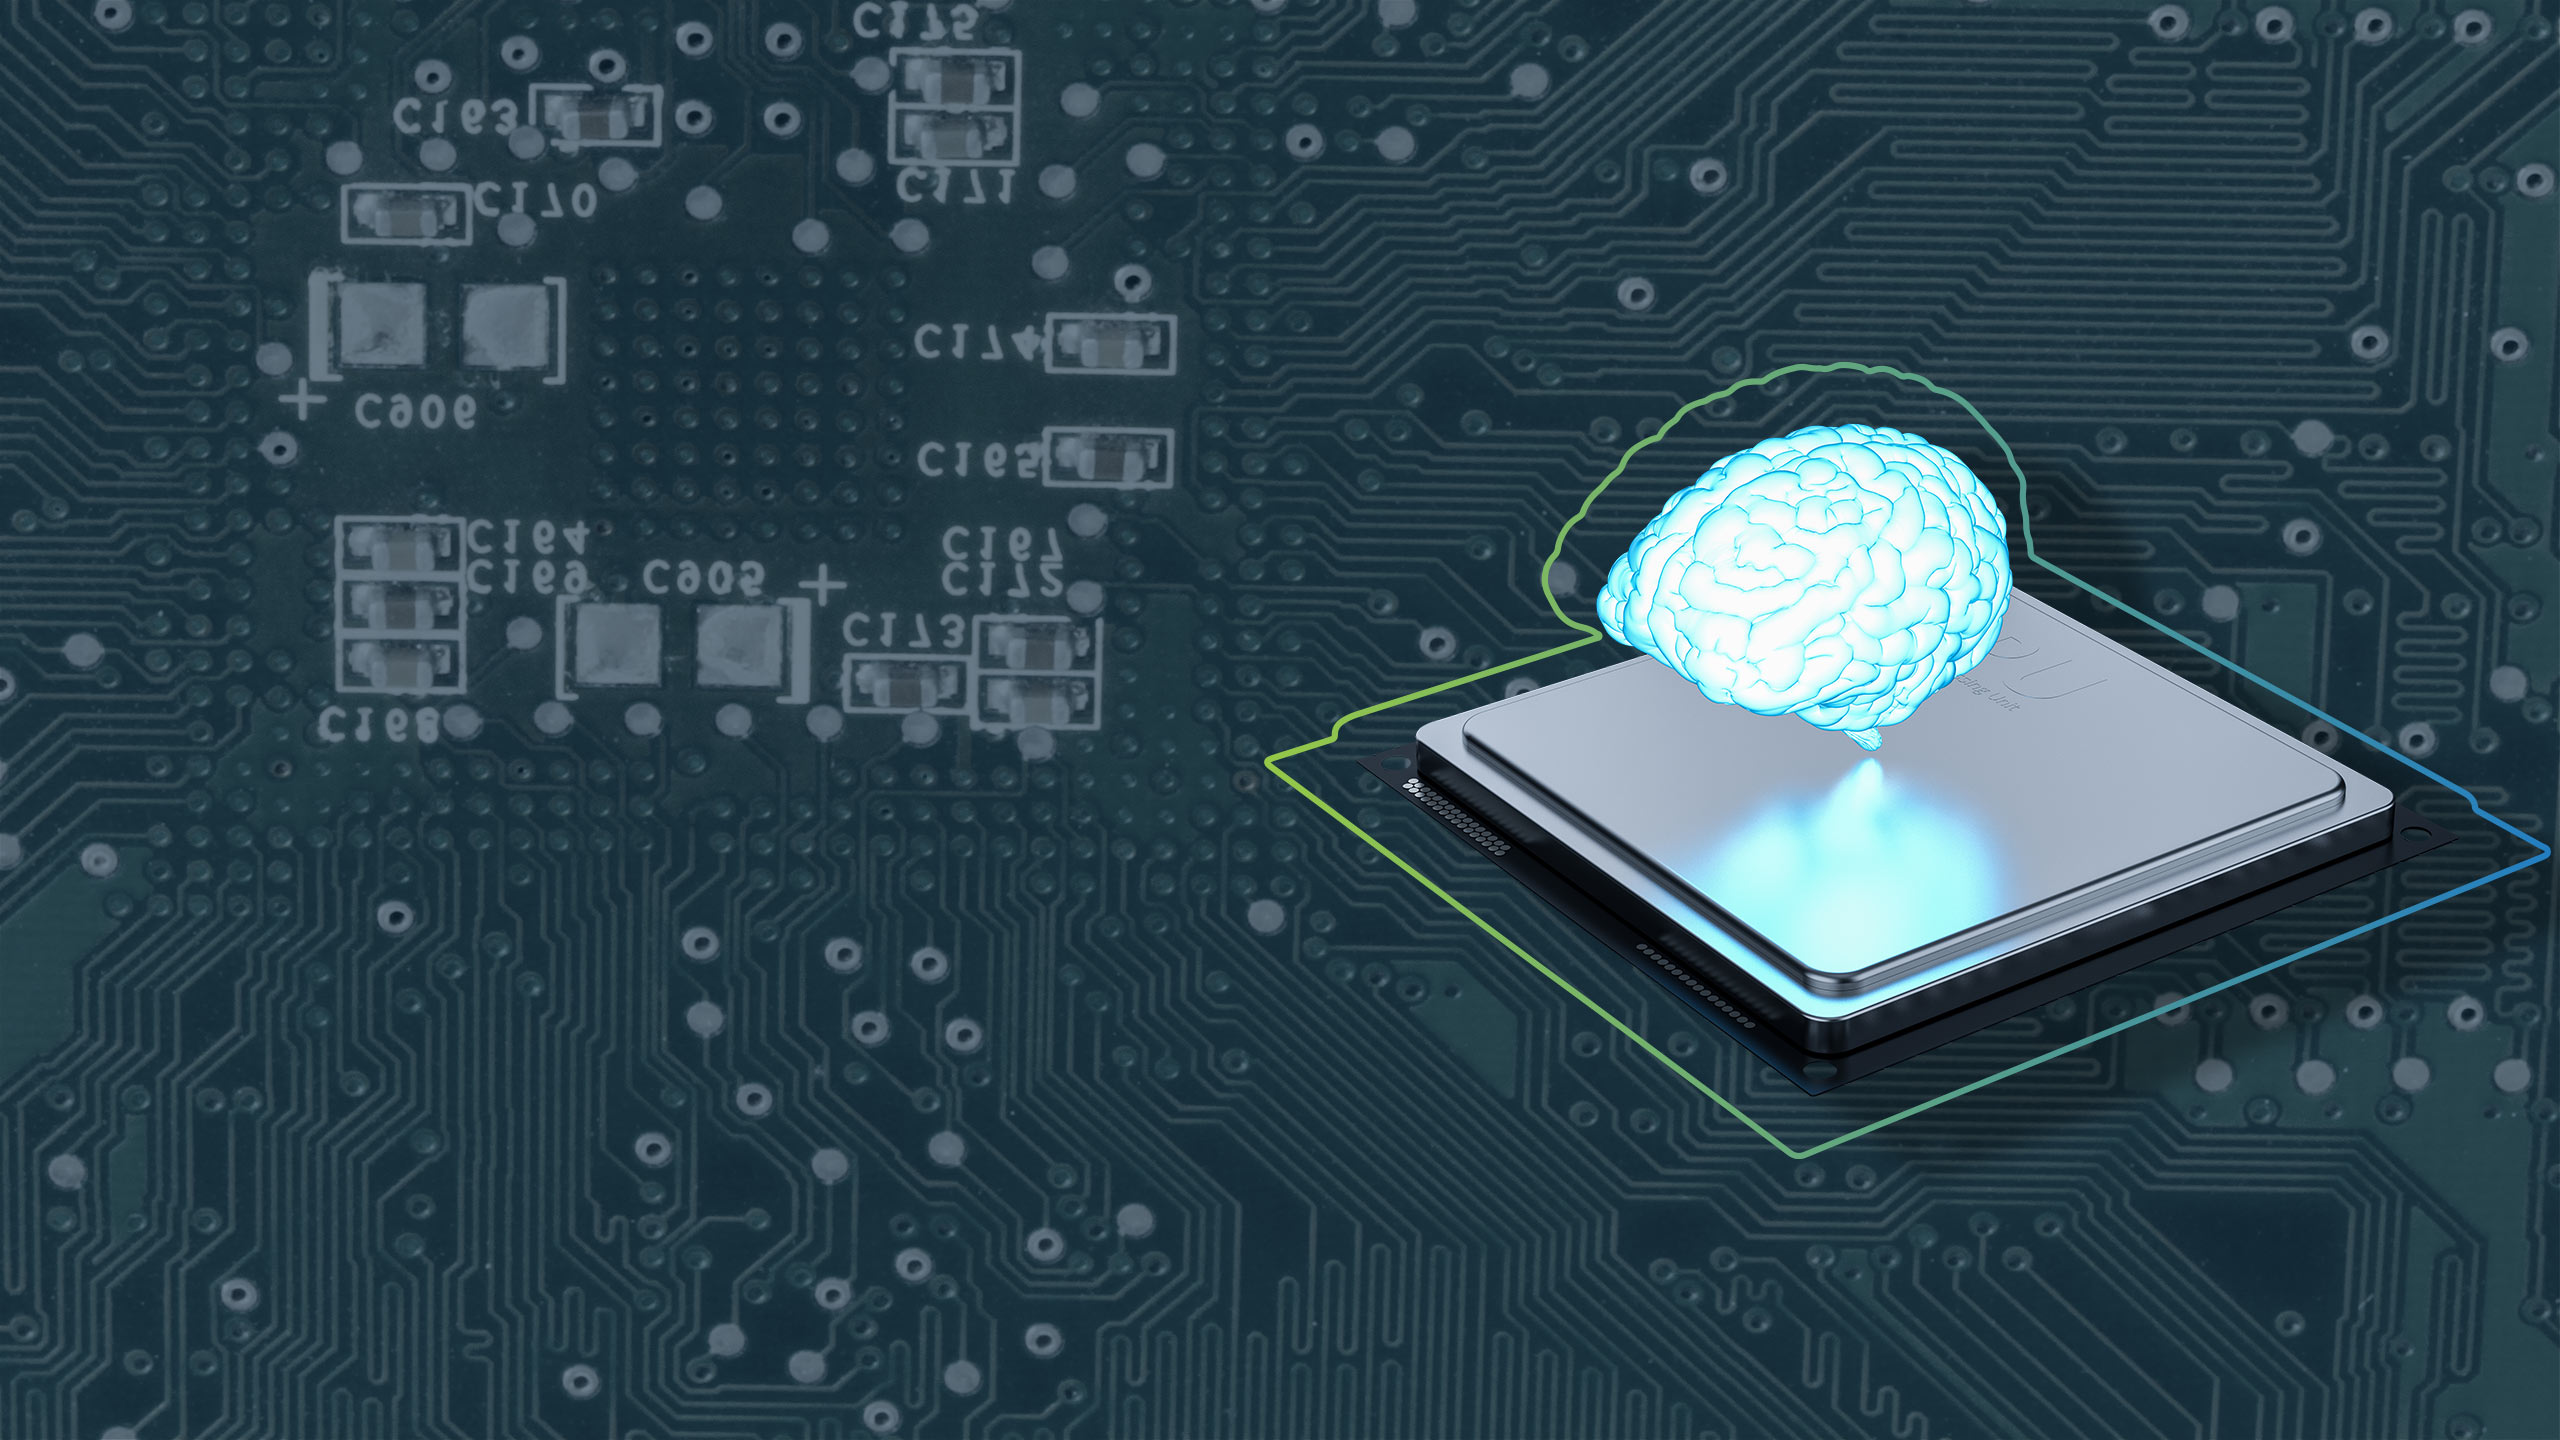 Headerbild zur Seite Digitale Transformation: zeigt ein KI-Gehirn vor einem Computerboard bzw. Computerchip von oben